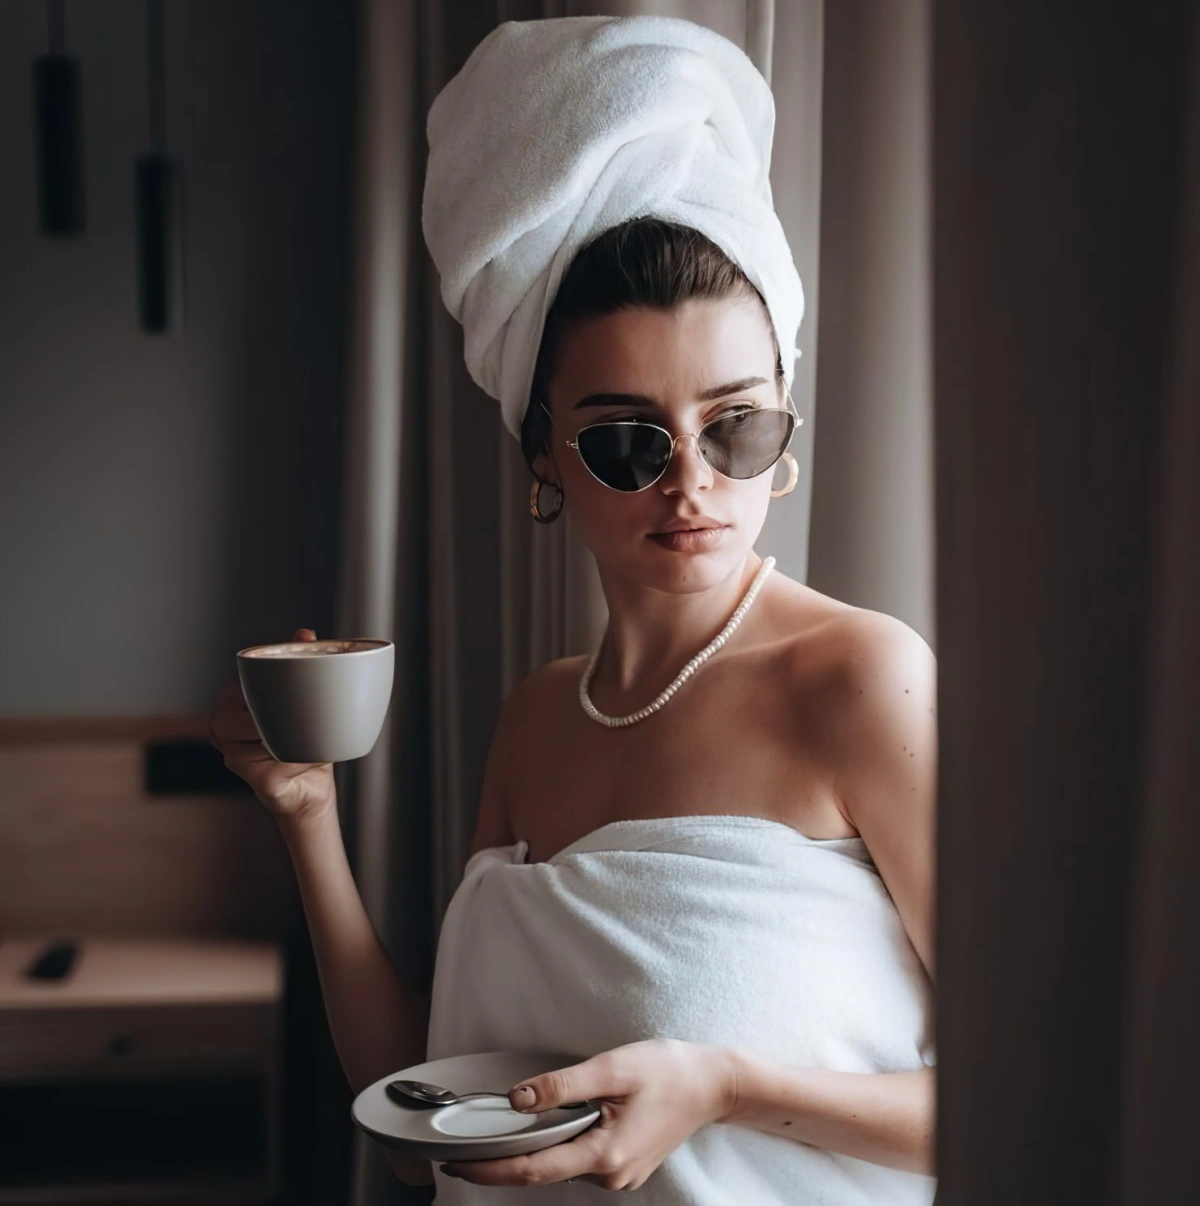 lunettes de soleil serviette de bain tasse cafe femme fenetre rideaux